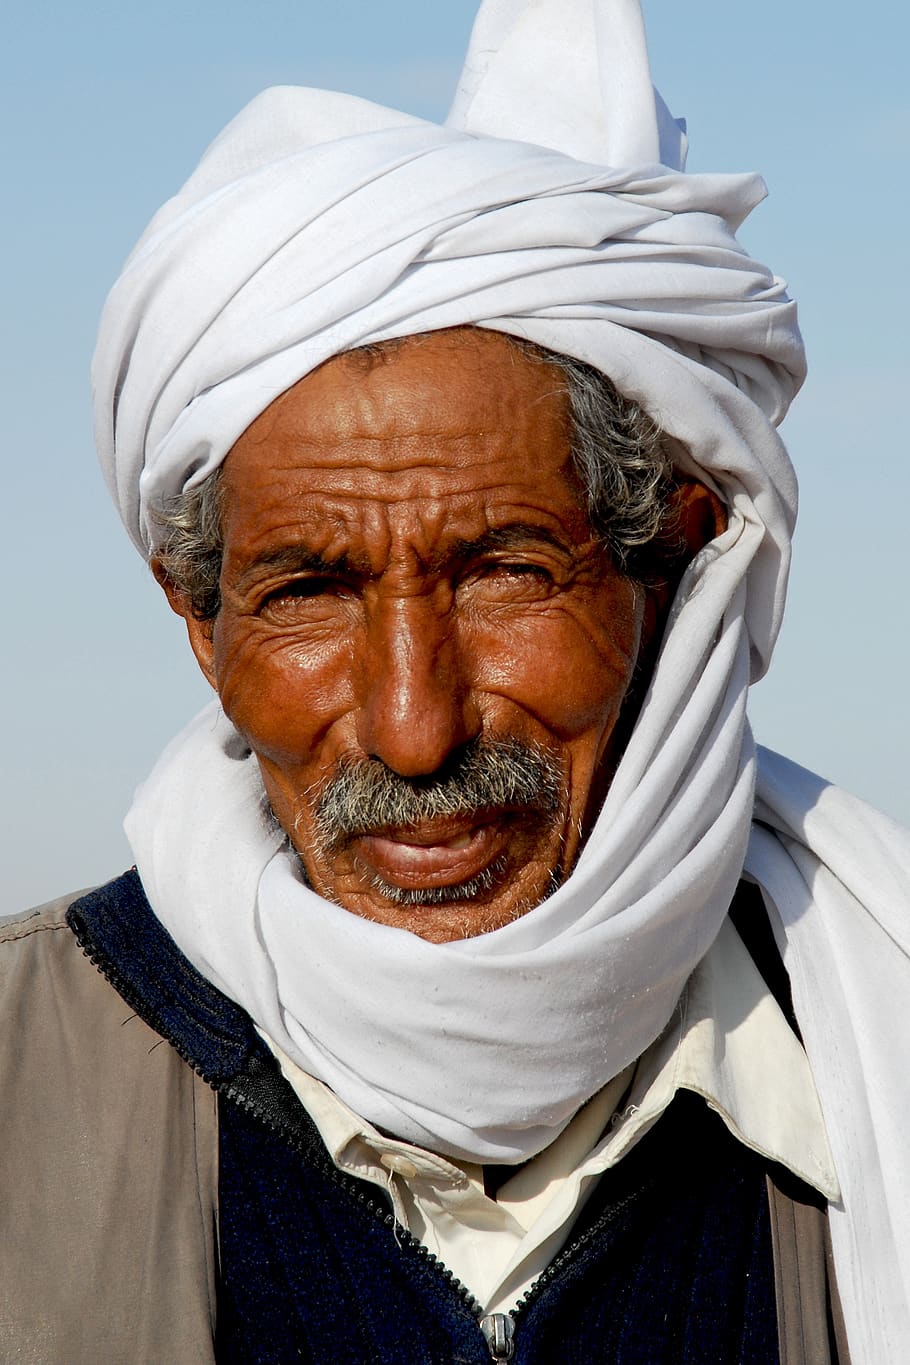 tunísia, nômade, beduíno, retrato, rosto, chapelaria, turbante, dobra, velho, uma pessoa